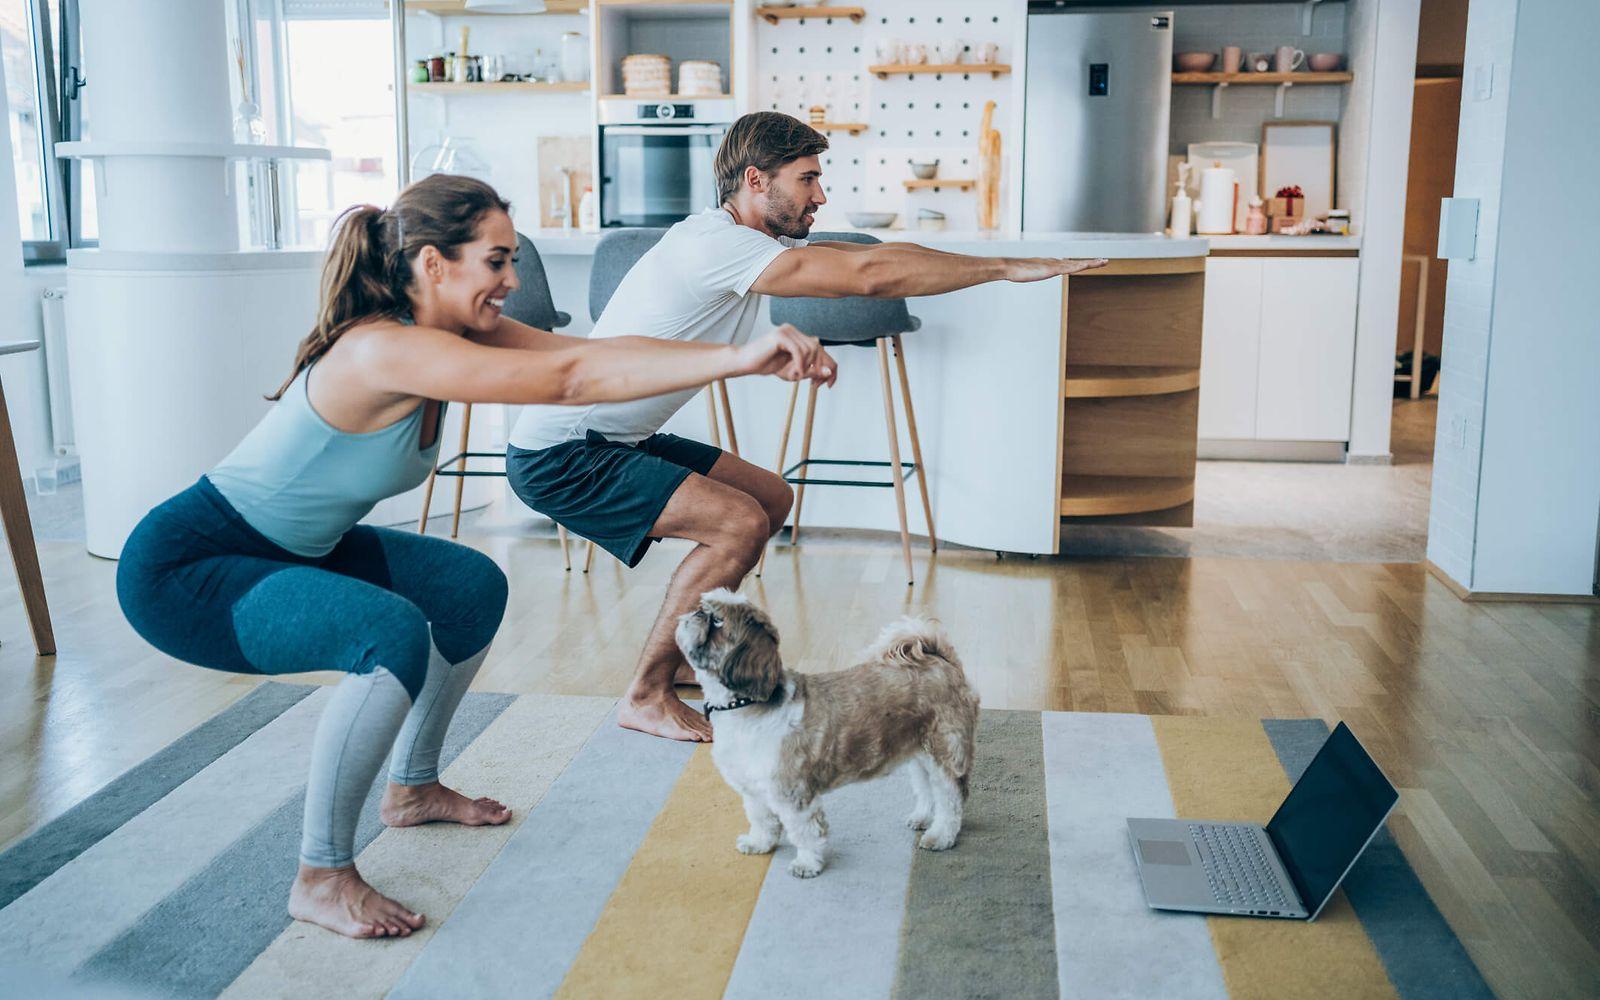 Bild: Onlineseminar Bewegung und Energiebilanz: Mann und Frau machen Kniebeugen in der Küche und ein Hund schaut zu.